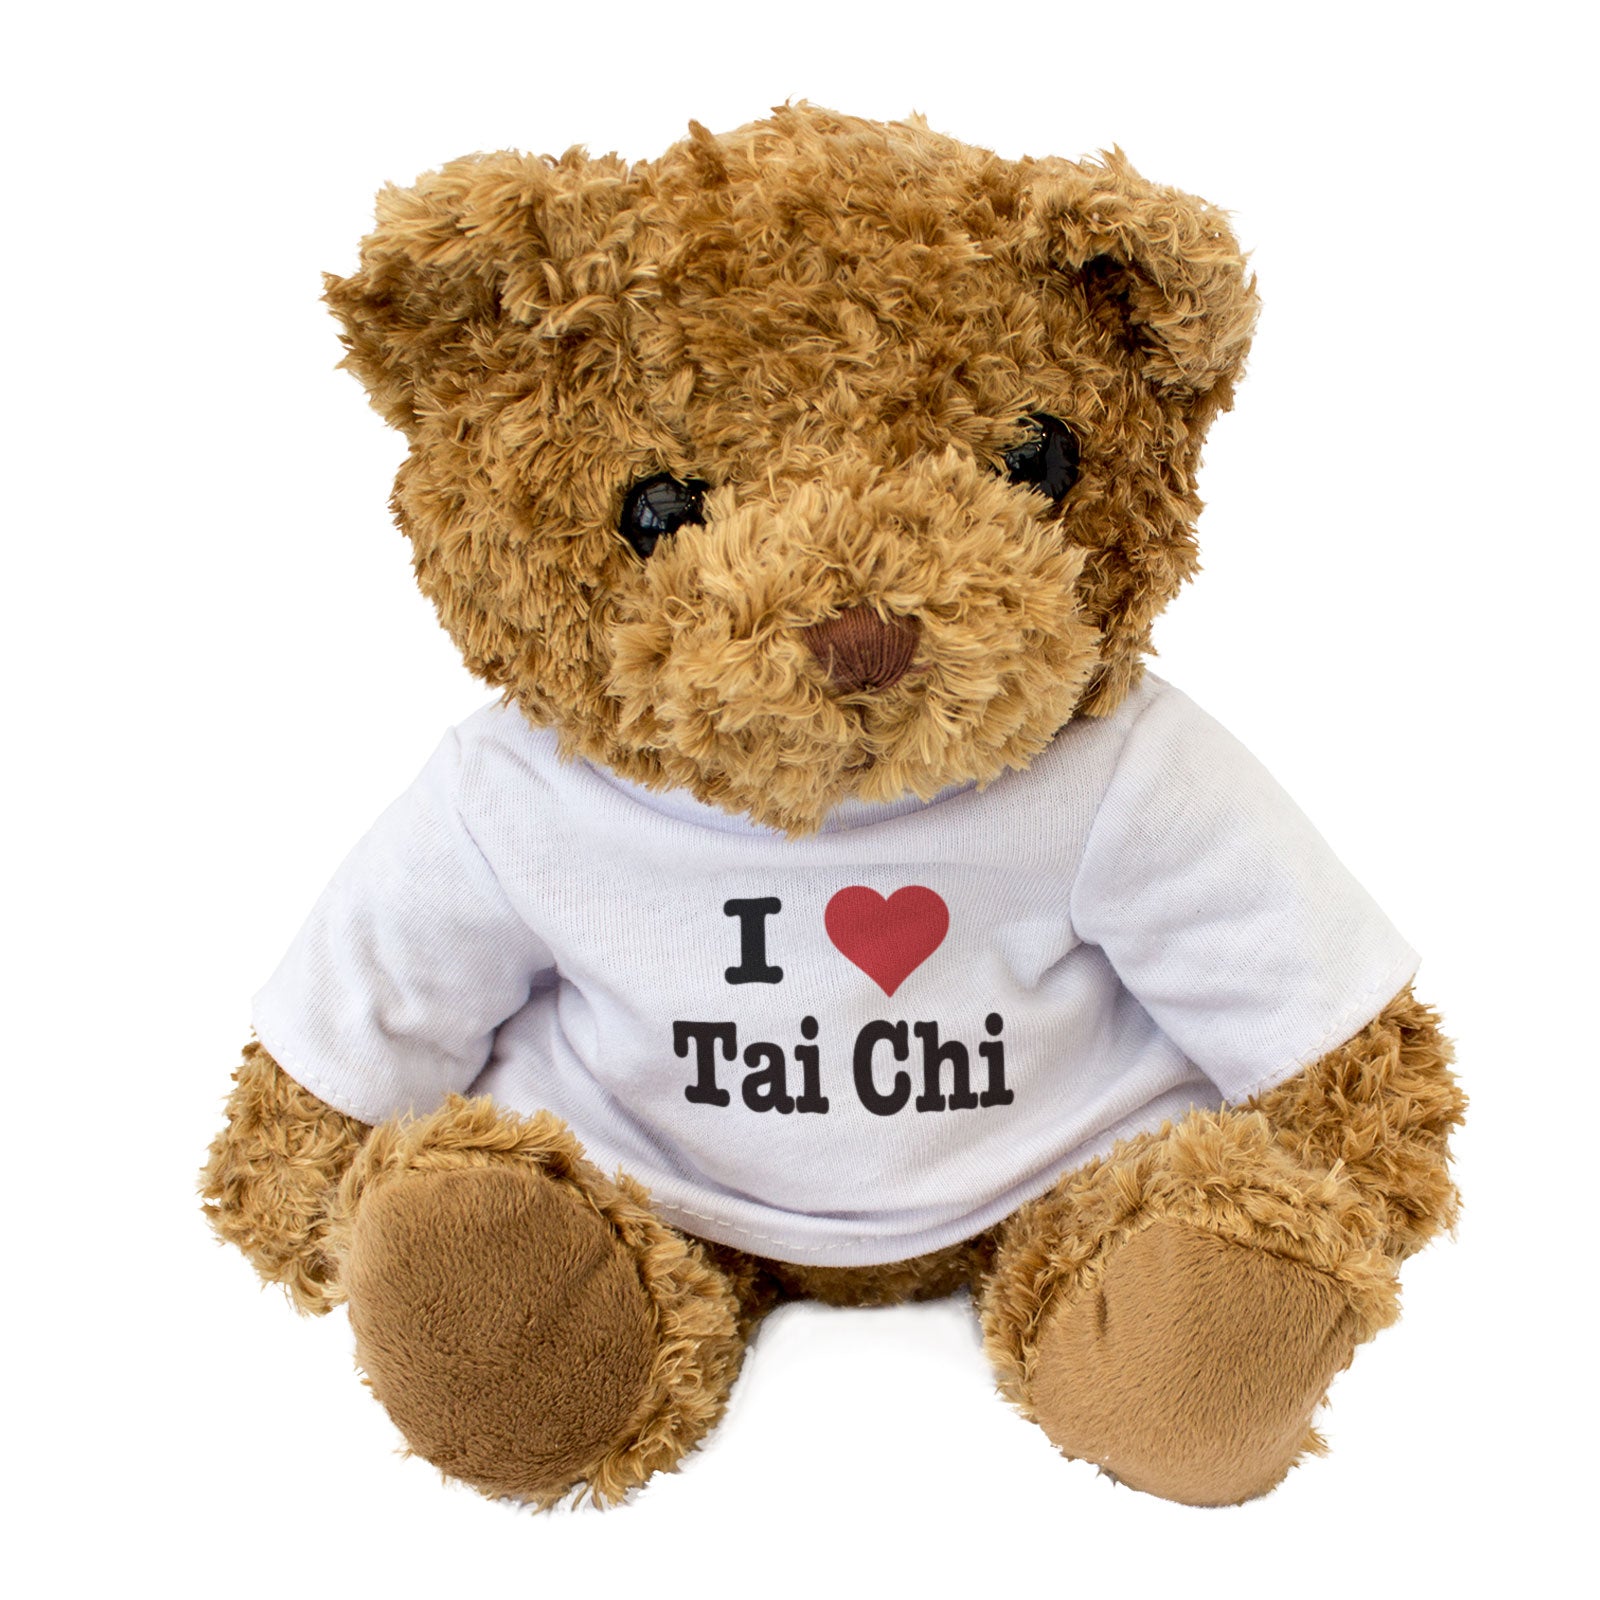 I Love Tai Chi - Teddy Bear